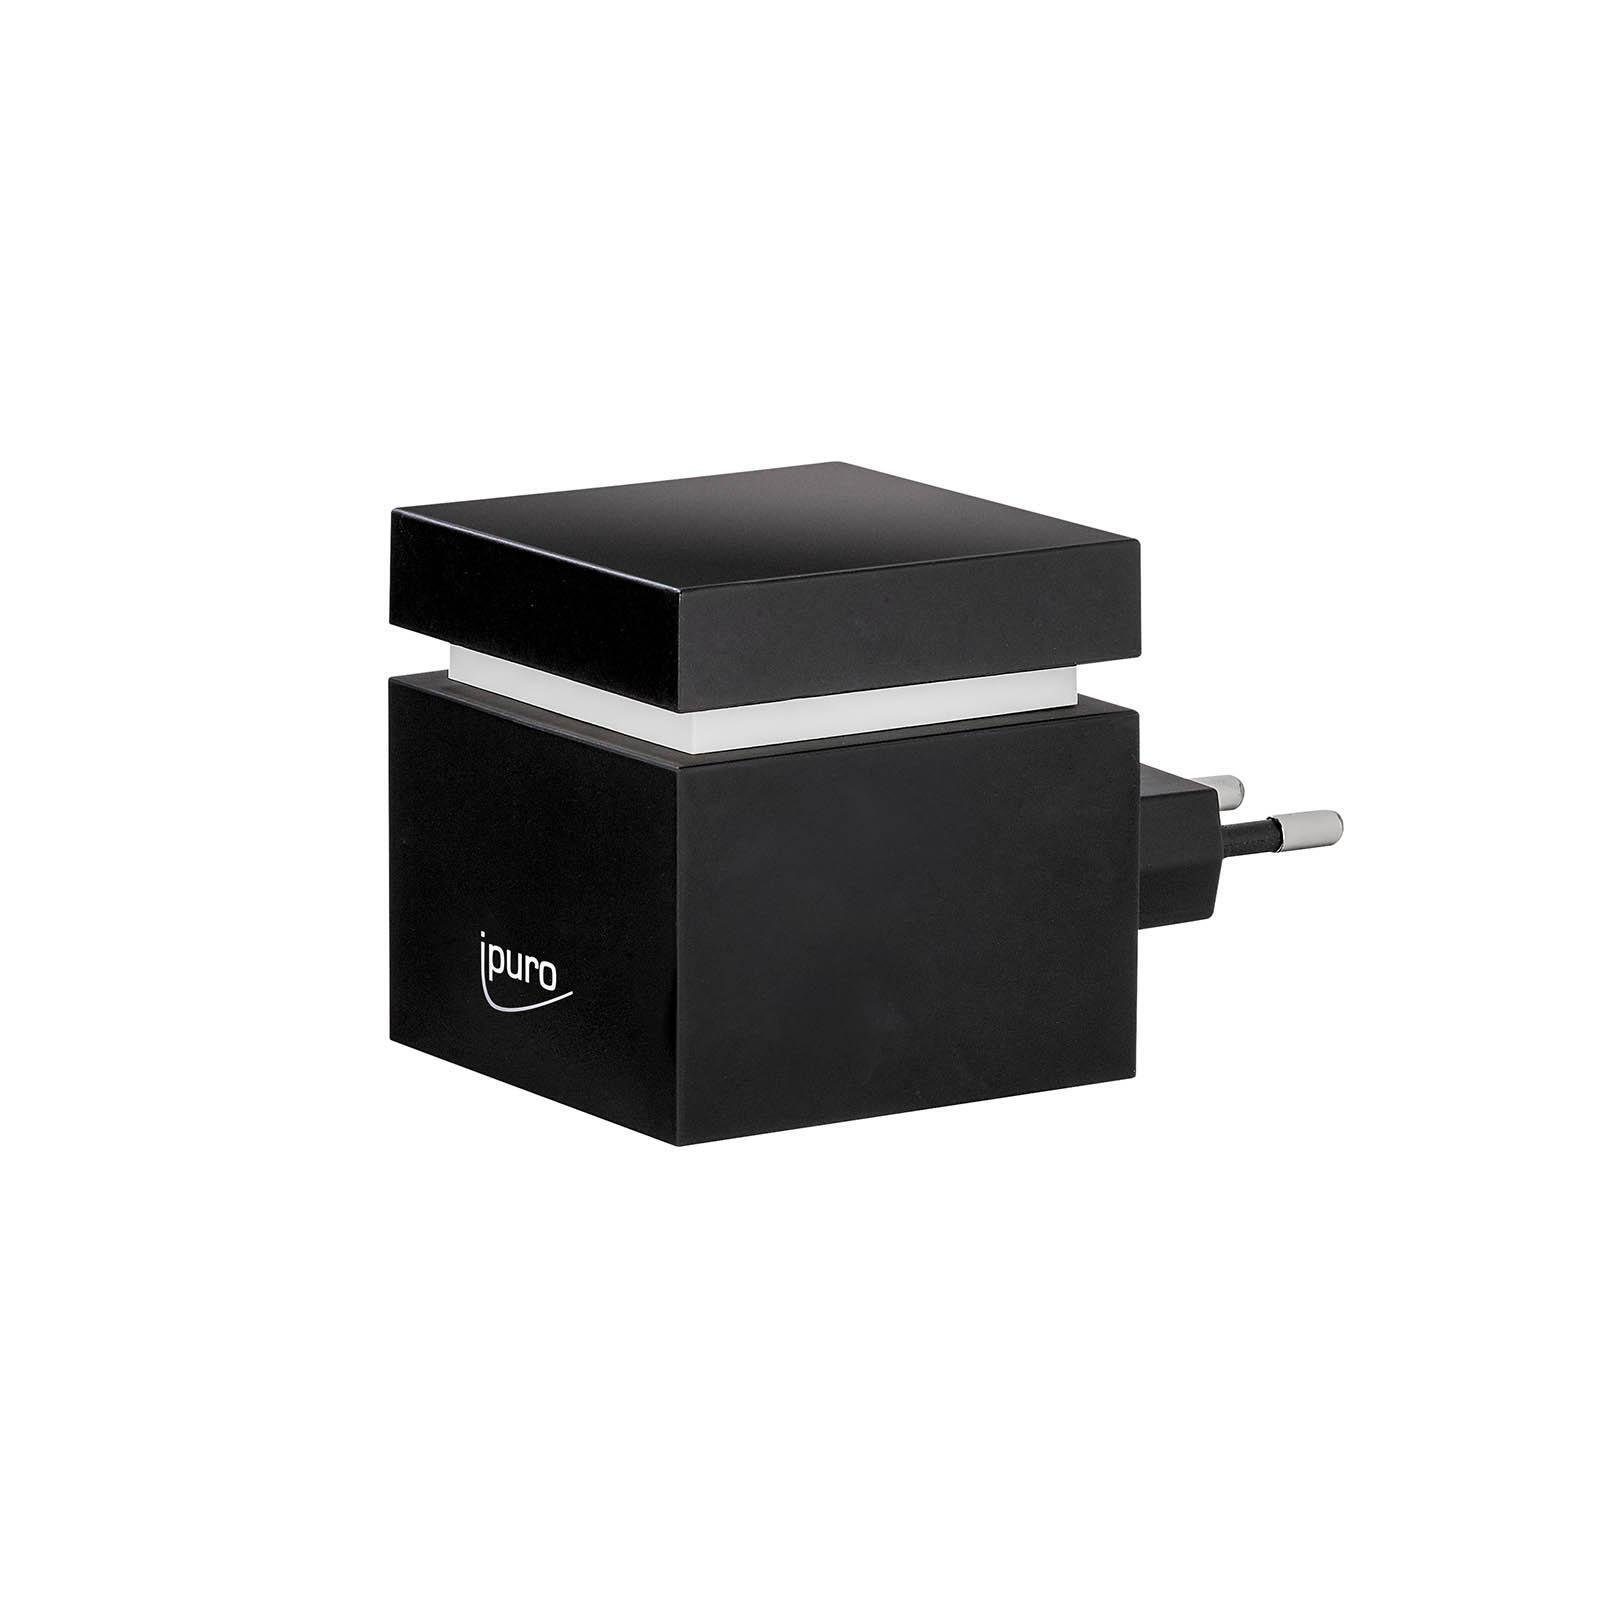 IPURO Duftlampe Elektrischer Aroma-Diffusor Plug-in Cube (Packung, 1 St., 1 Stück Elektrischer Aroma-Diffusor Plug-in Cube), aus Aroma-Diffusor, B 5.5 Zentimeter, H 9.3 Zentimeter, T 5.5 Zentimeter | Duftlampen